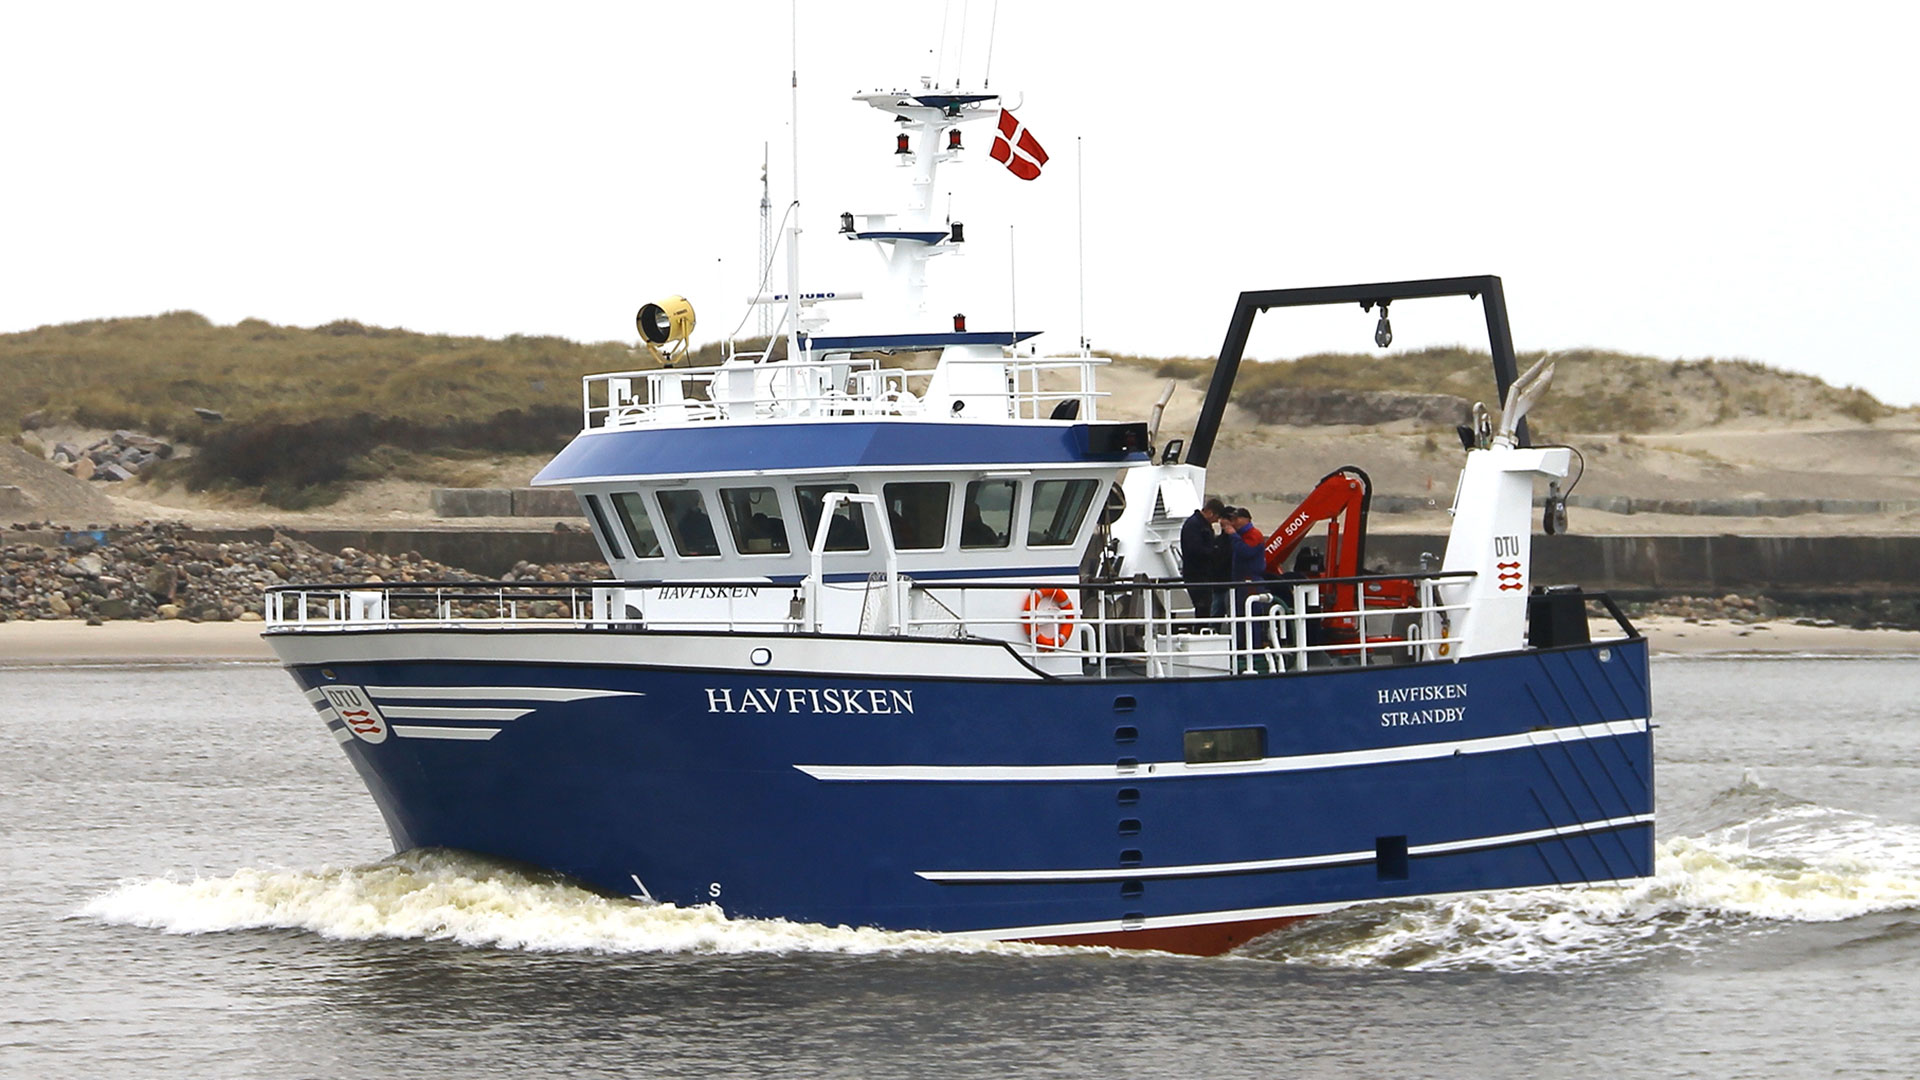 The research vessel Havfisken